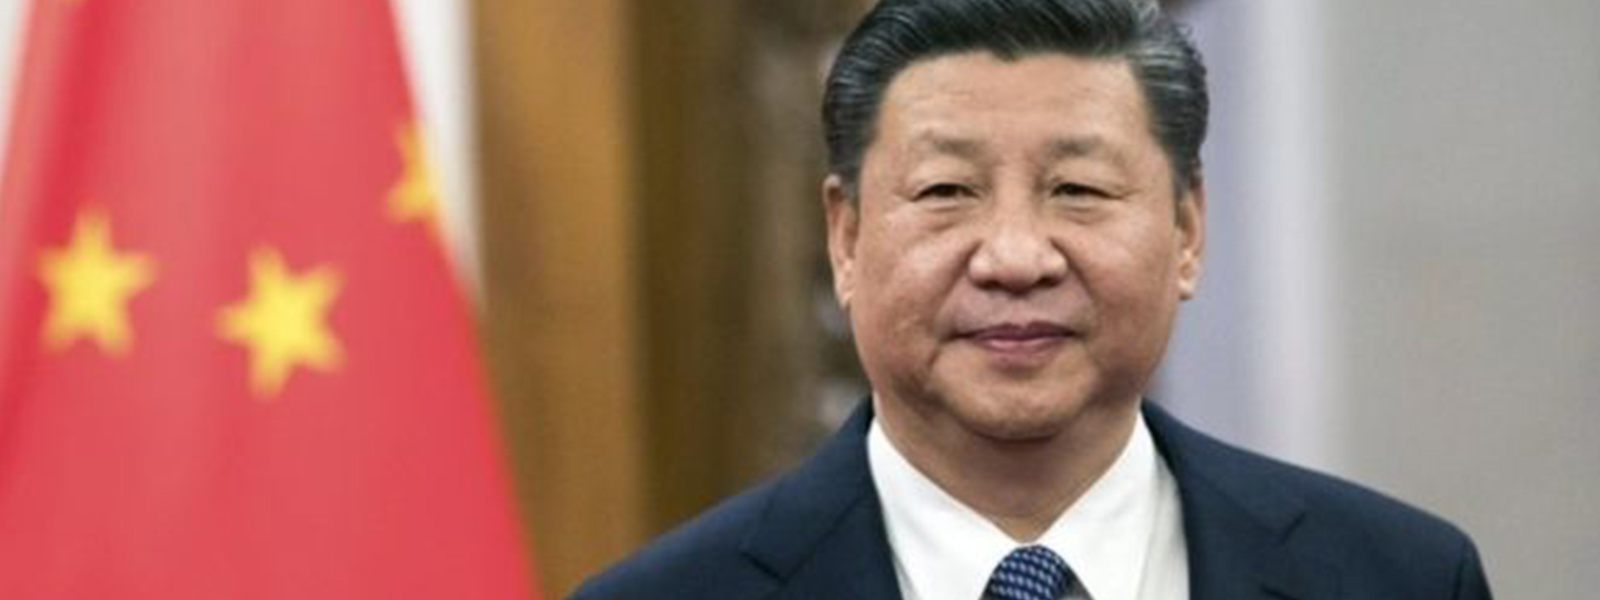 Xi in peril?